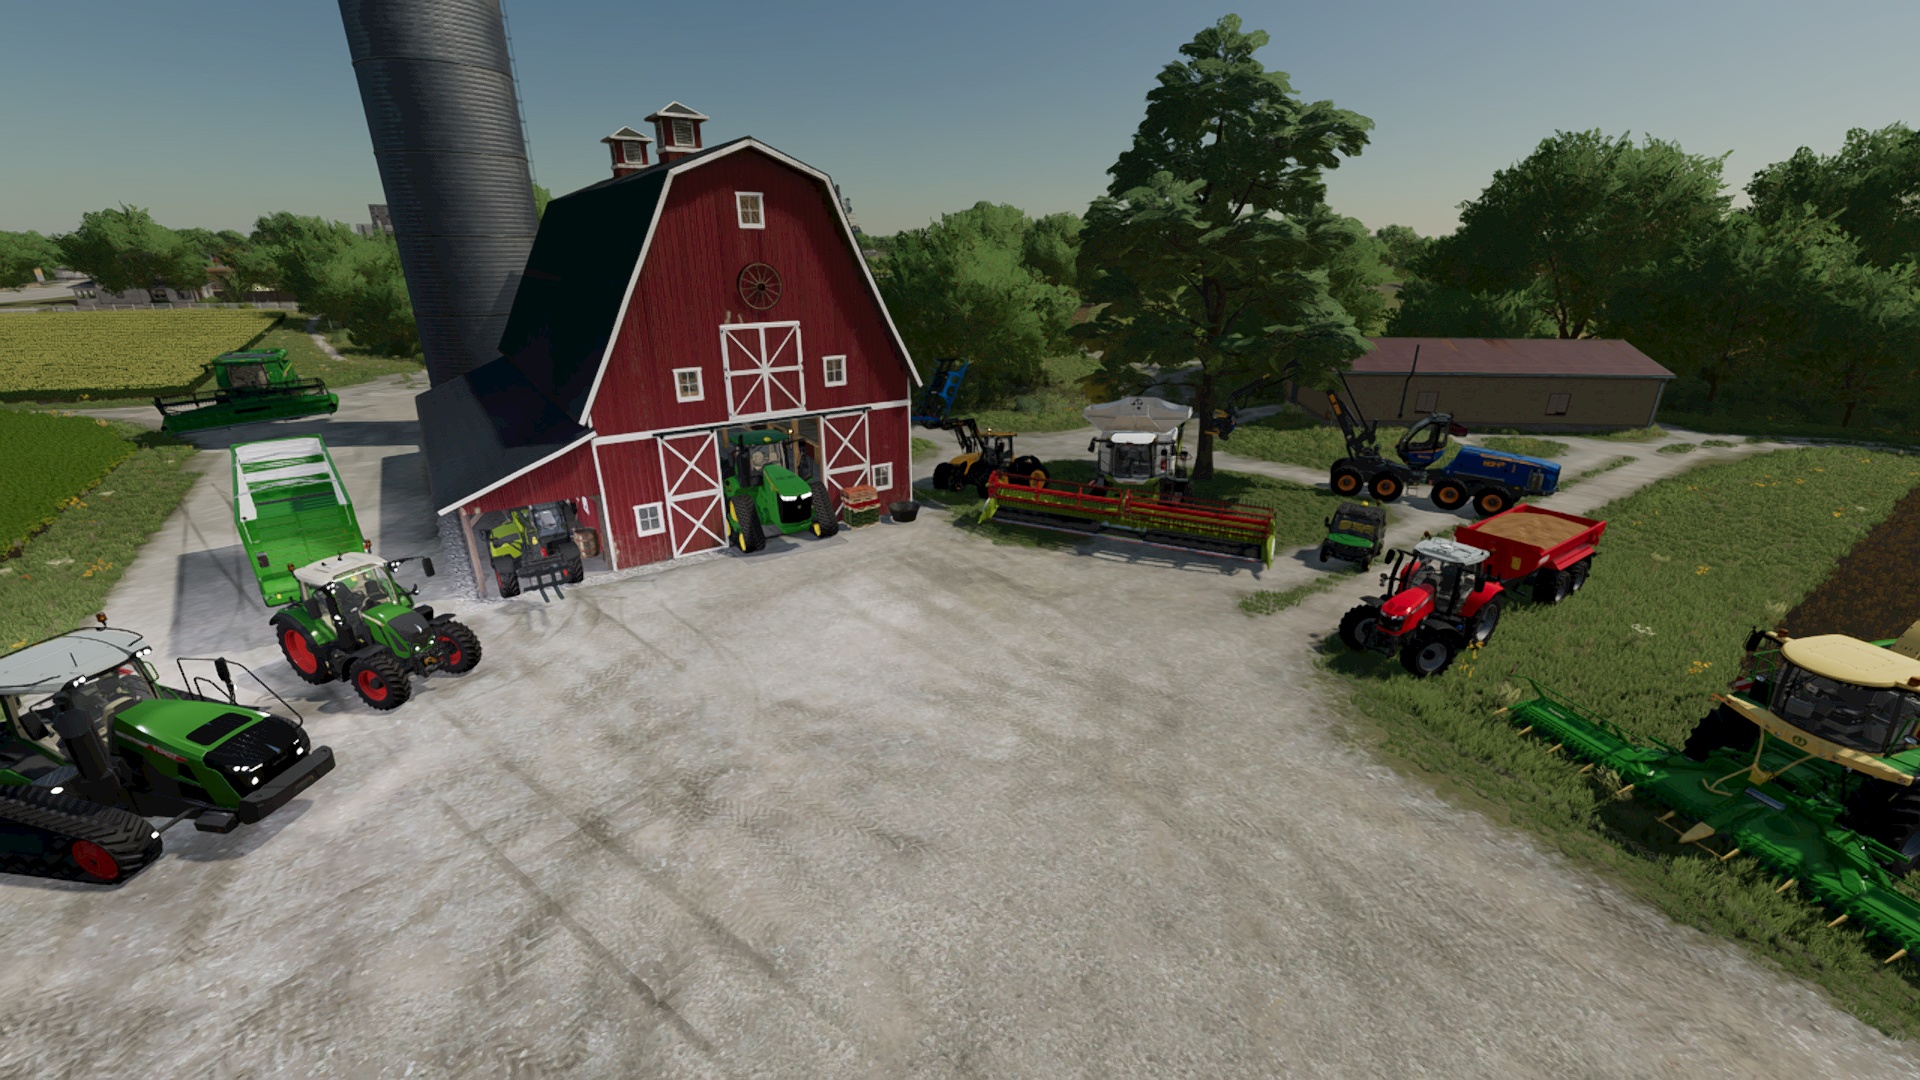 Landwirtschafts-Simulator 22: Diese Tipps erleichtern den Start